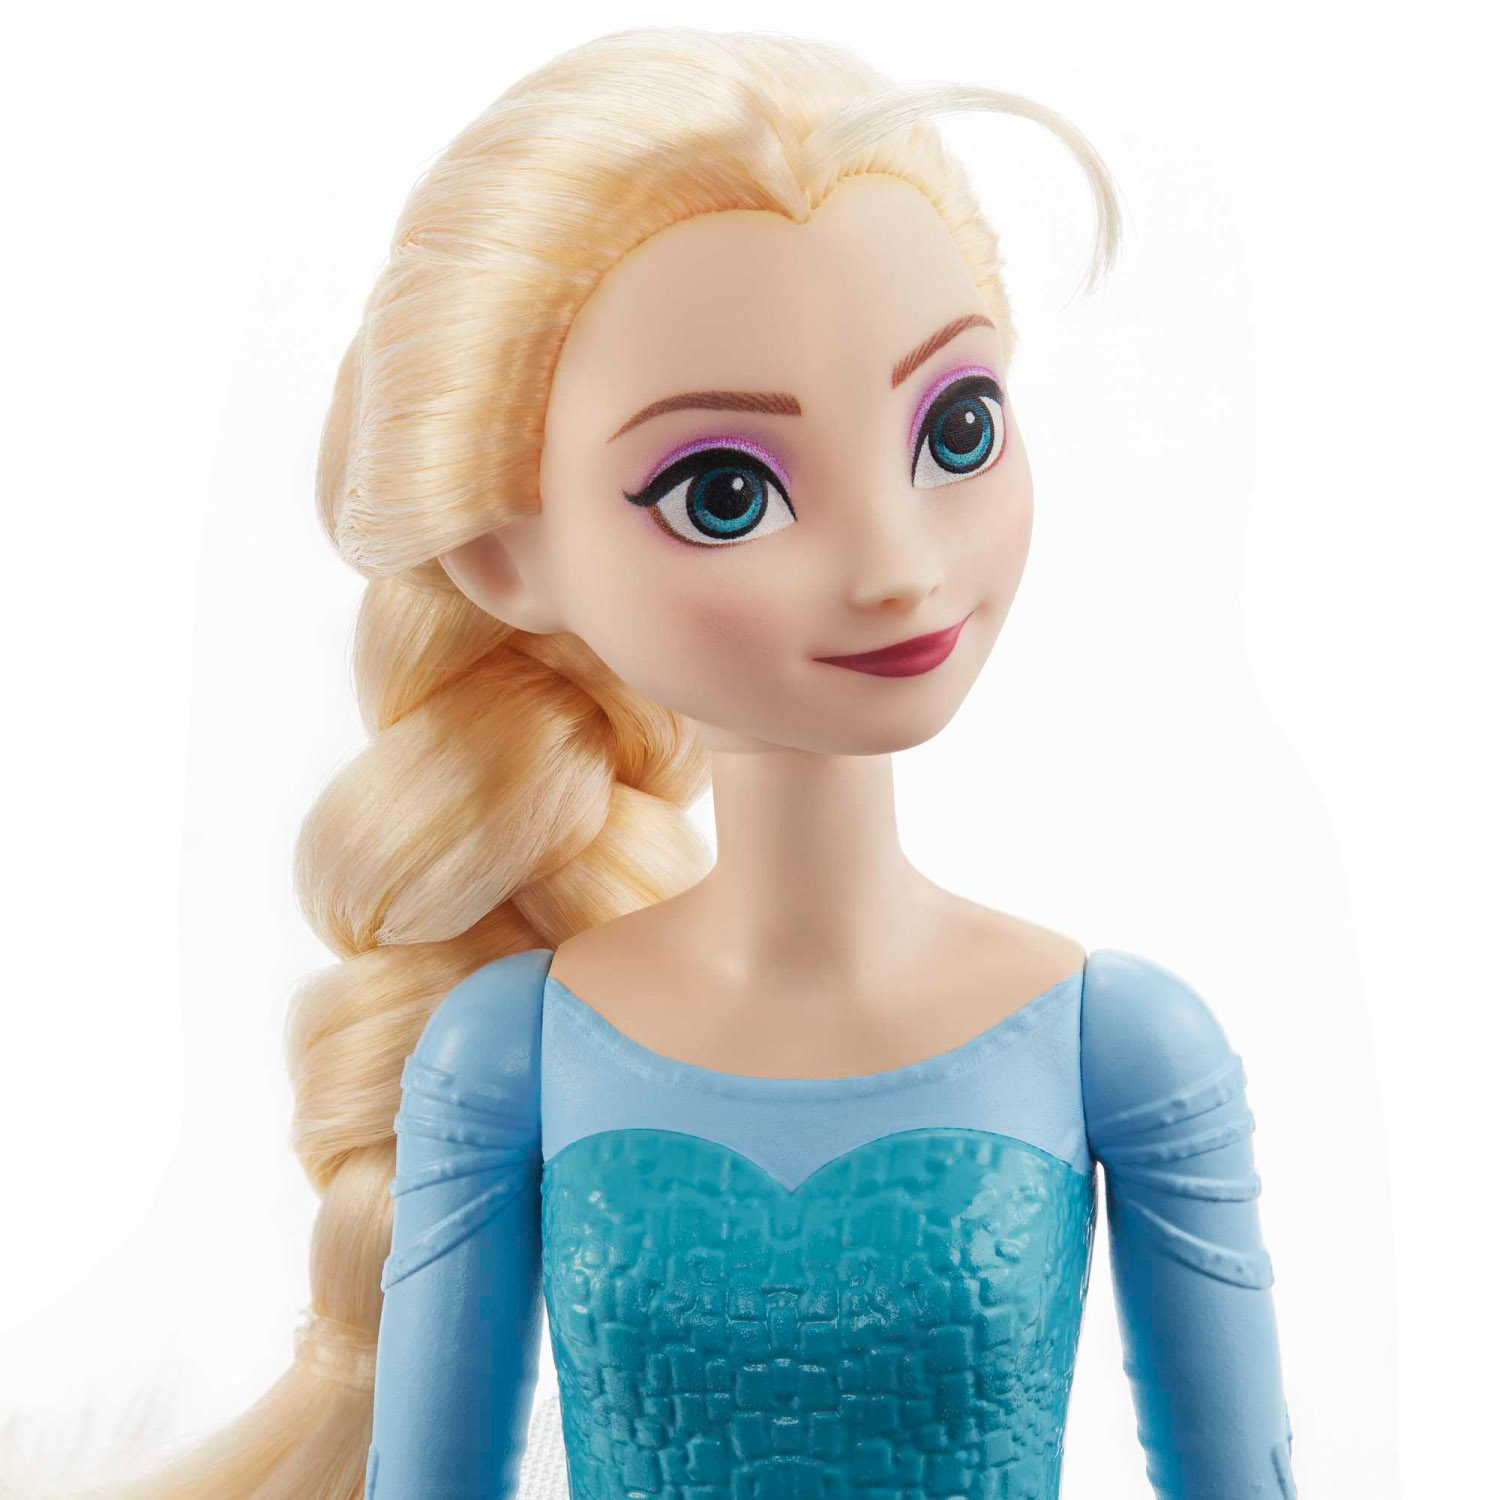 Elsa Bambola con abito esclusivo e accessori ispirati al film Disney Frozen, HLW47 - Disney